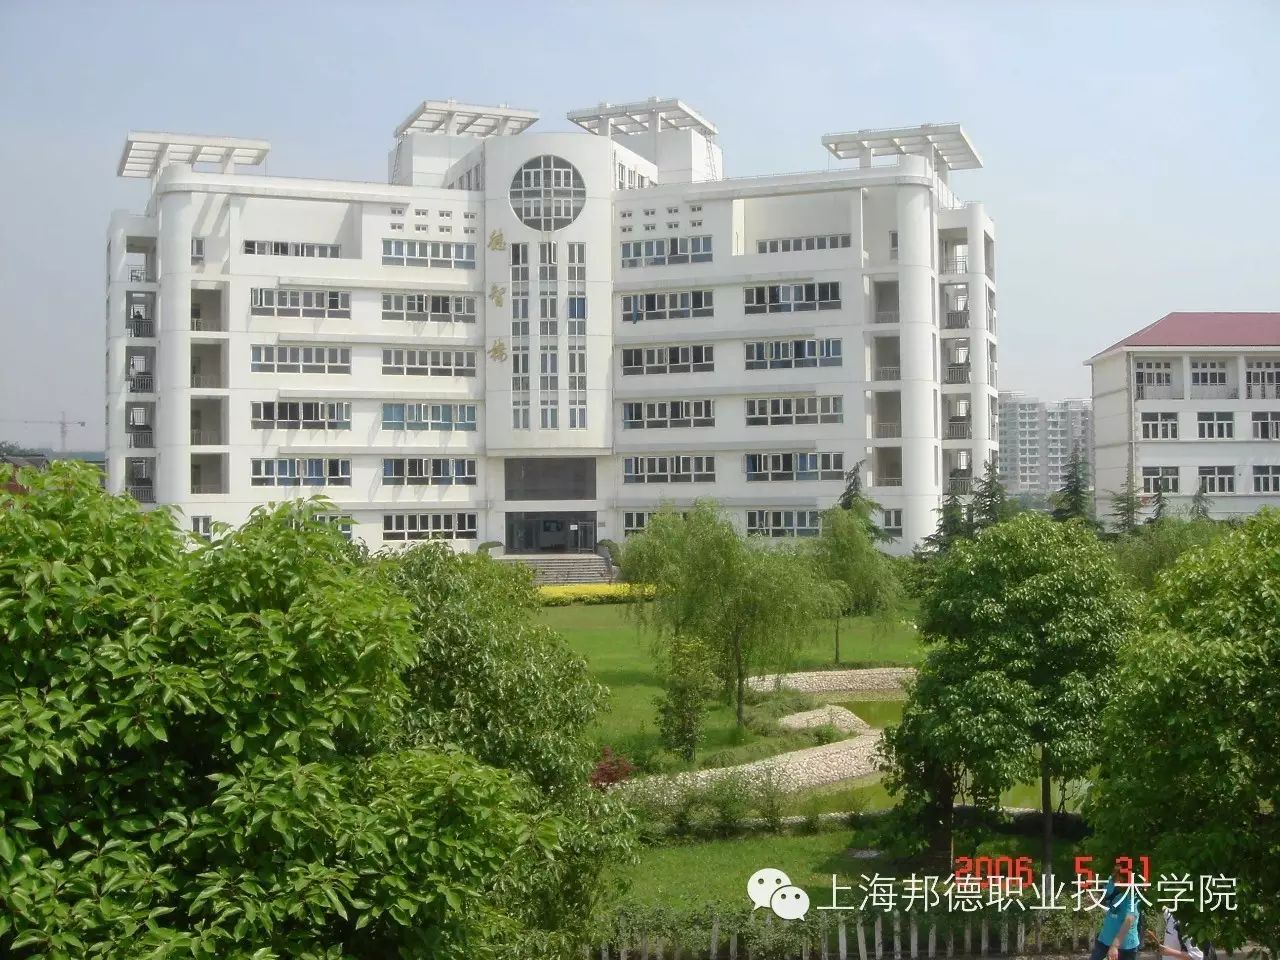 上海邦德职业技术学院继续教育学院交通大学网络教育16秋季火热报名中